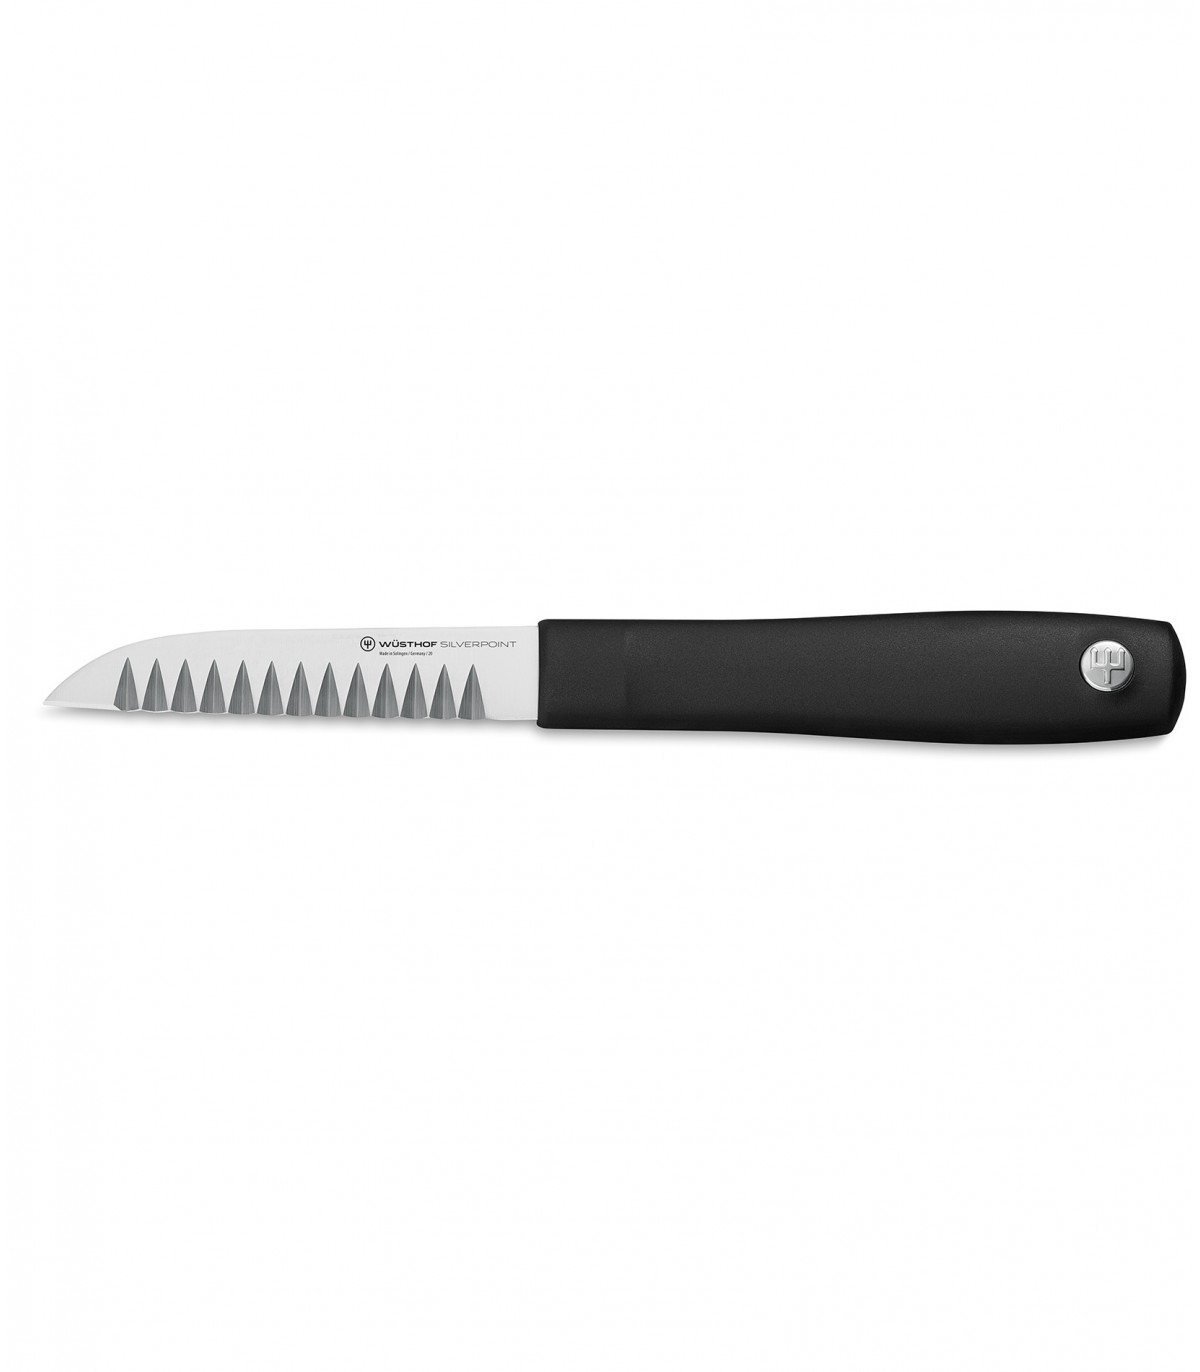 Μαχαίρι Διακόσμησης 9 εκ. Silverpoint Wusthof 1035148409 - 3